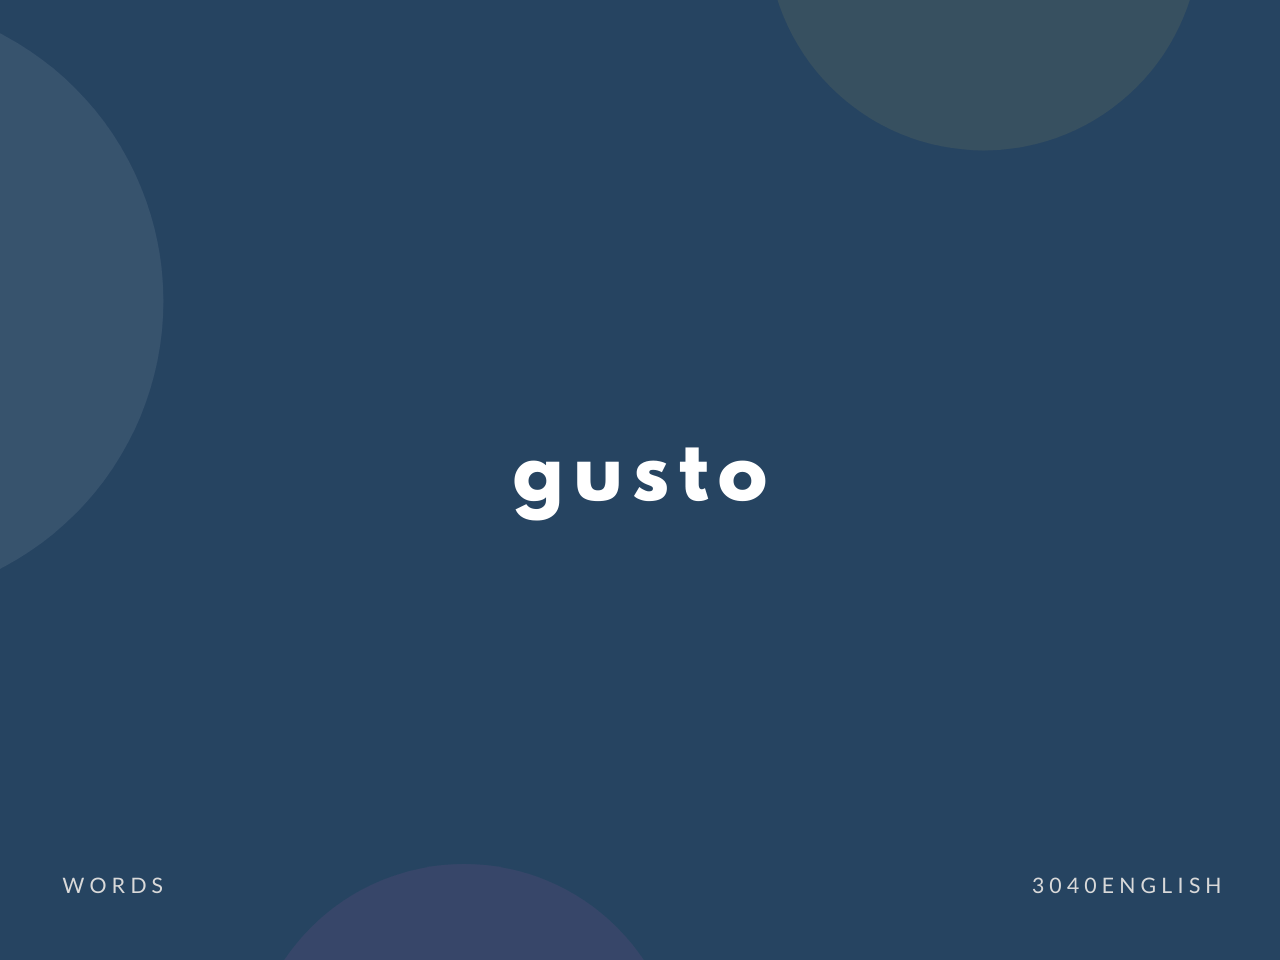 【ガスト】gusto の意味と簡単な使い方【英語表現・例文あり】